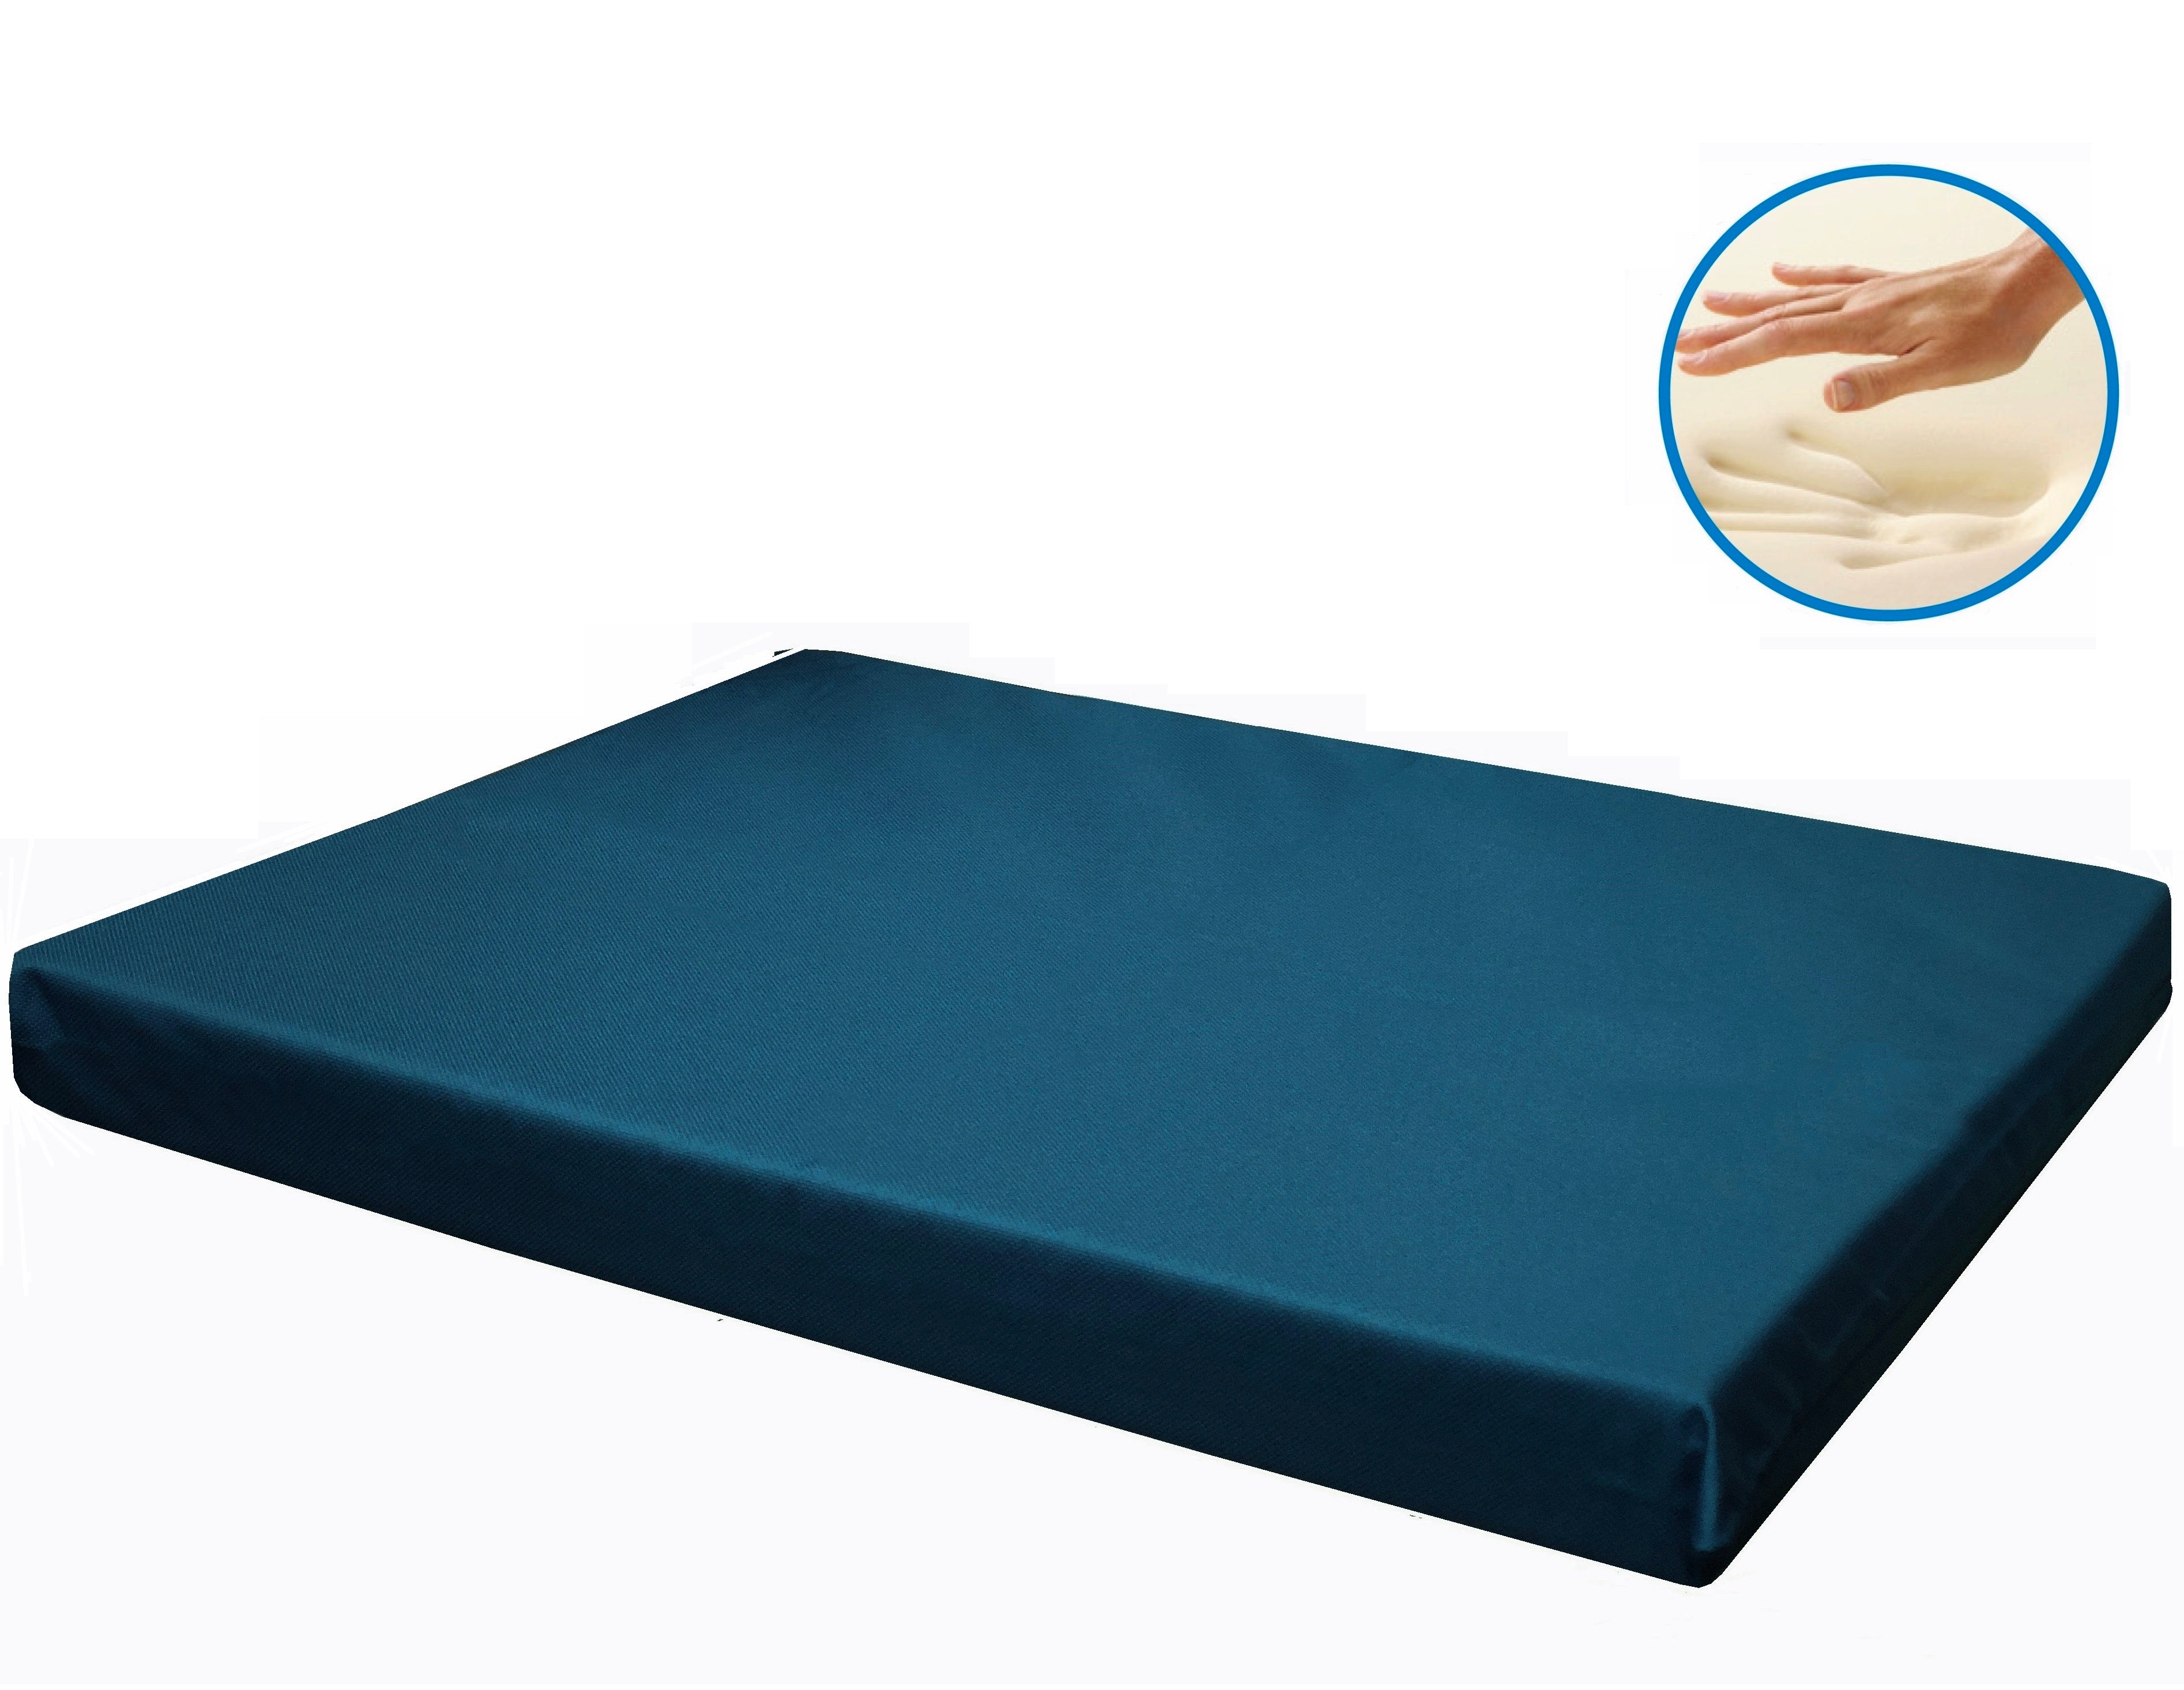 waterproof memory foam dog bed